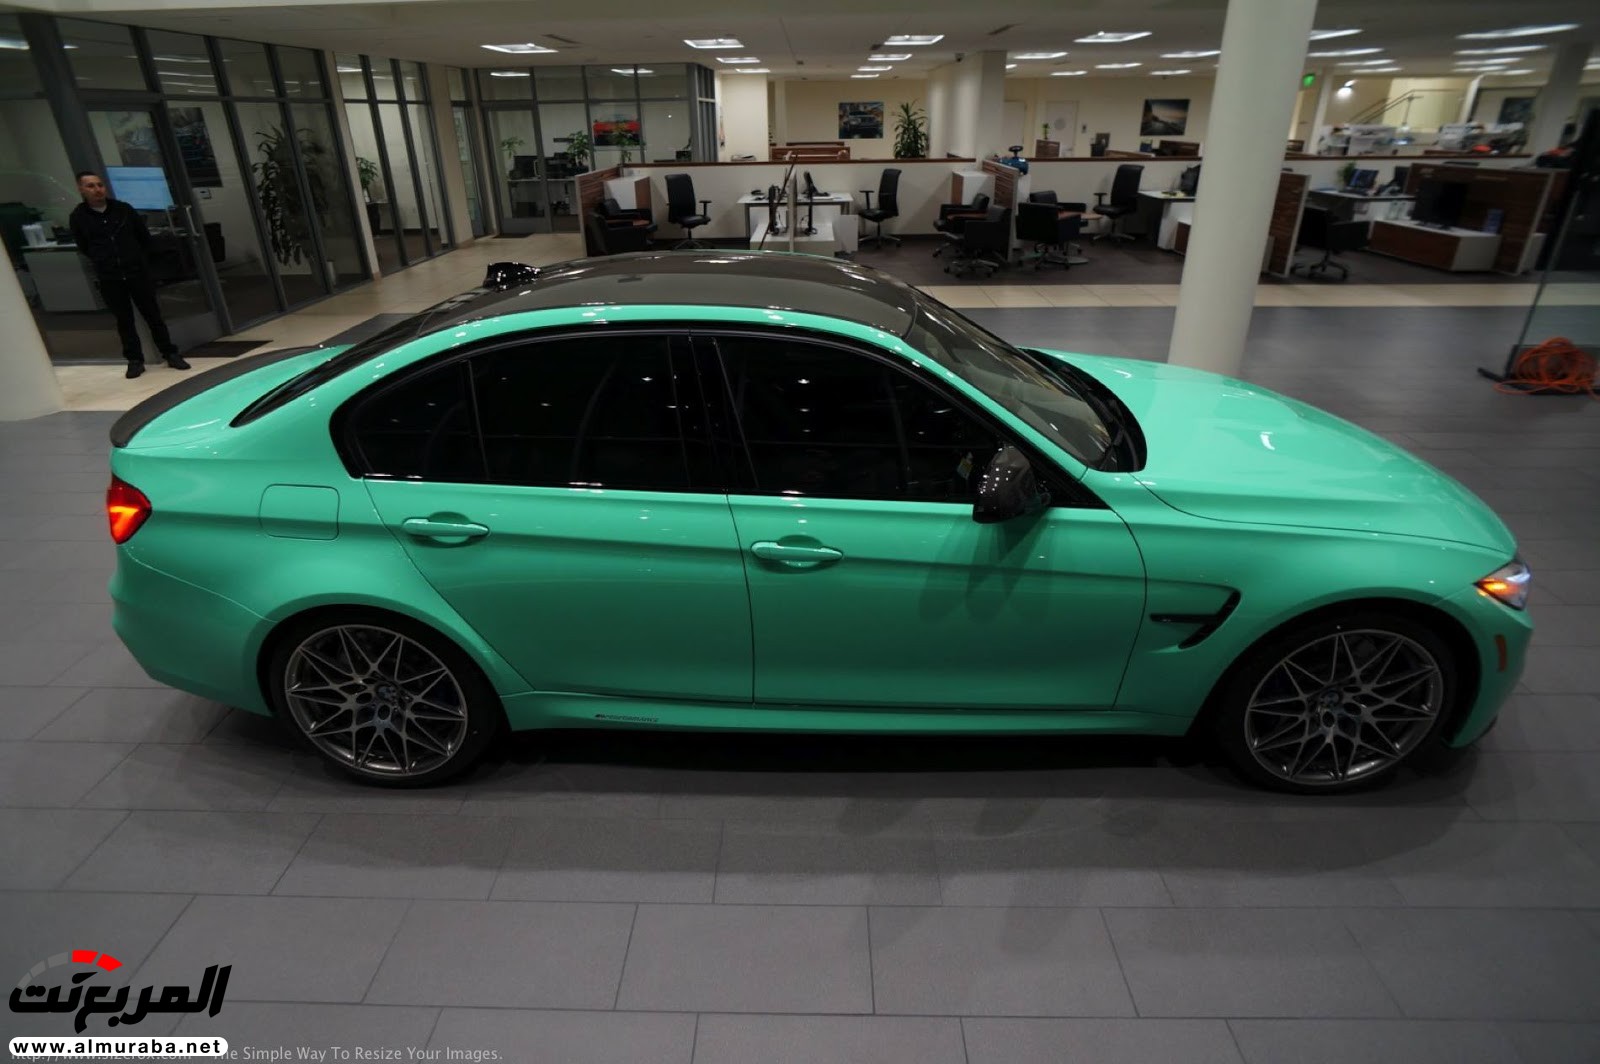 "بالصور" شاهد "بي إم دبليو" F80 M3 الخاصة بطلاء النعناع الأخضر BMW 111